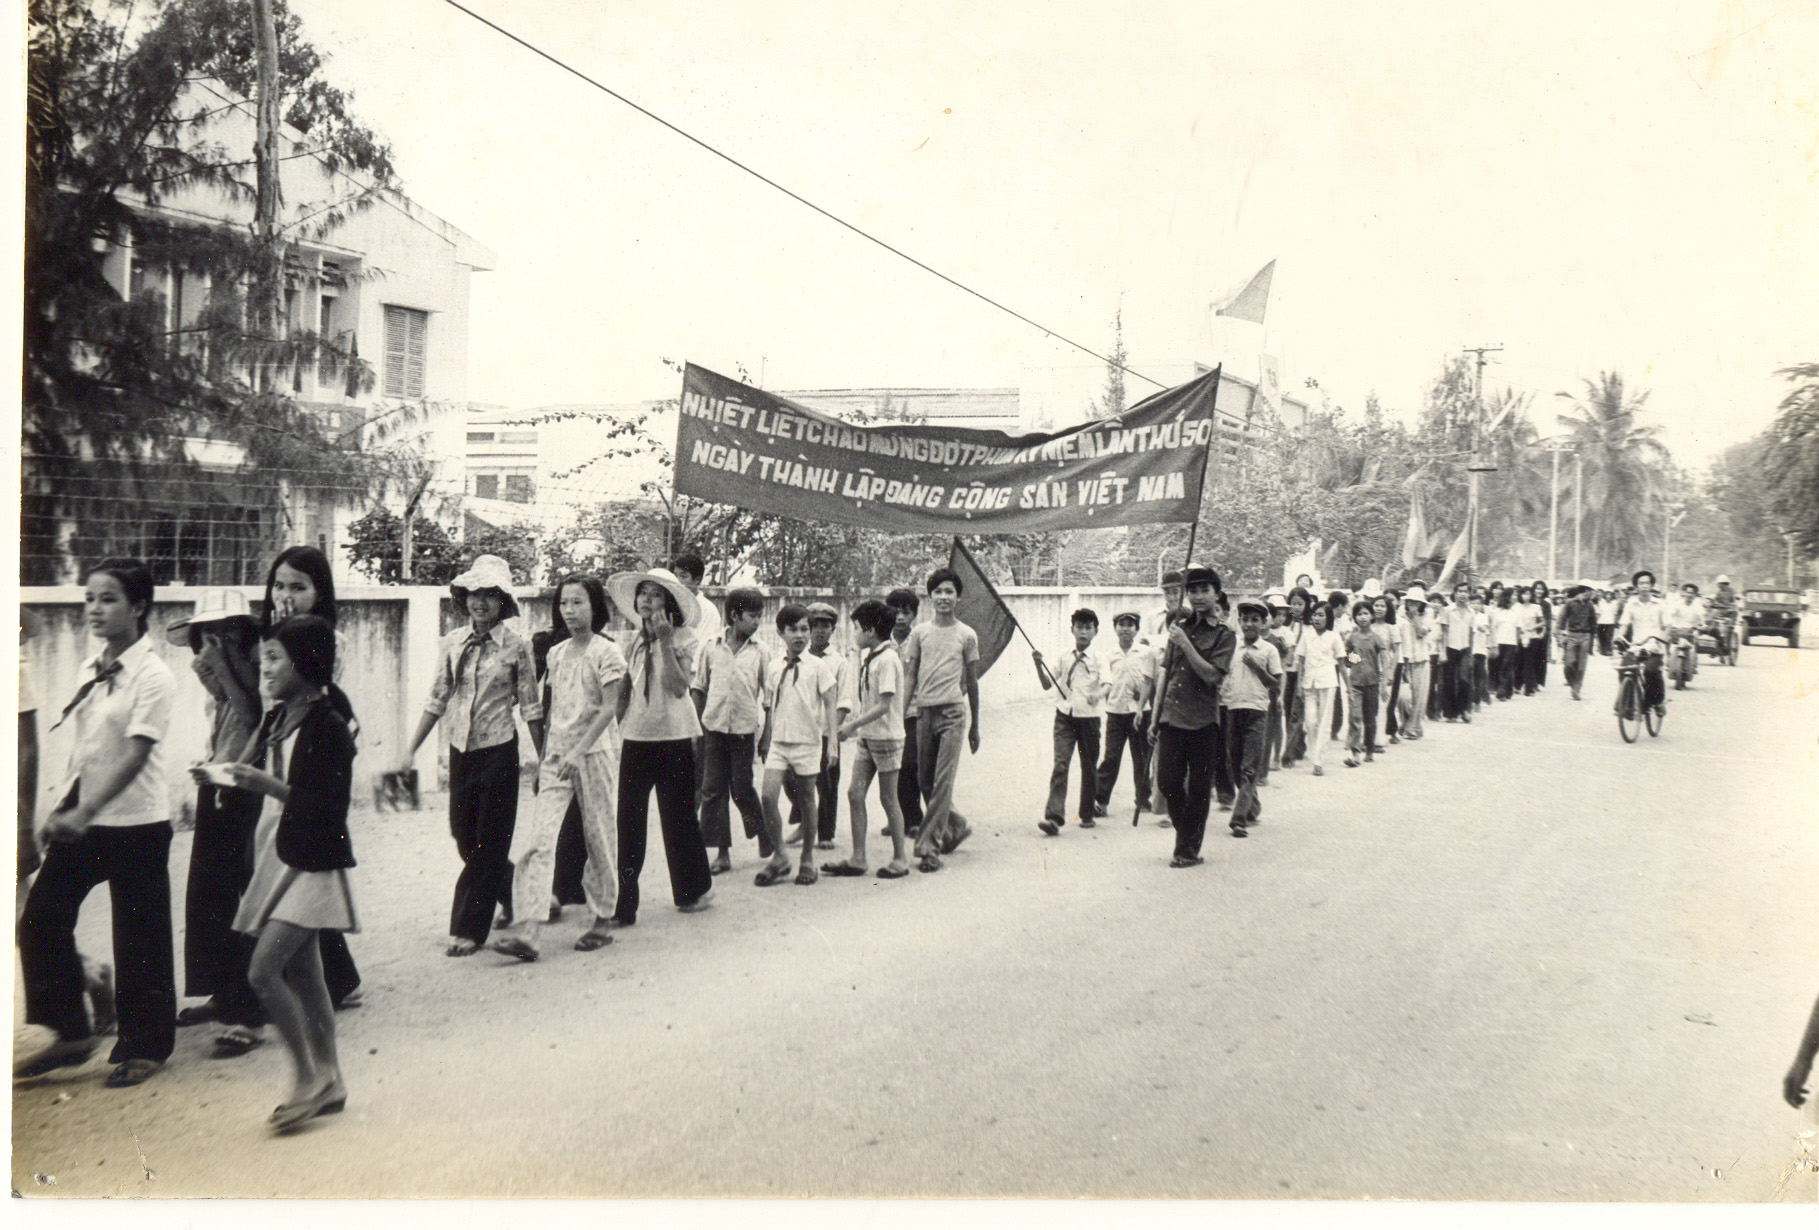 Diễu hành cổ động đợt phim kỷ niệm 50 năm Ngày thành lập Đảng cộng sản Việt Nam.